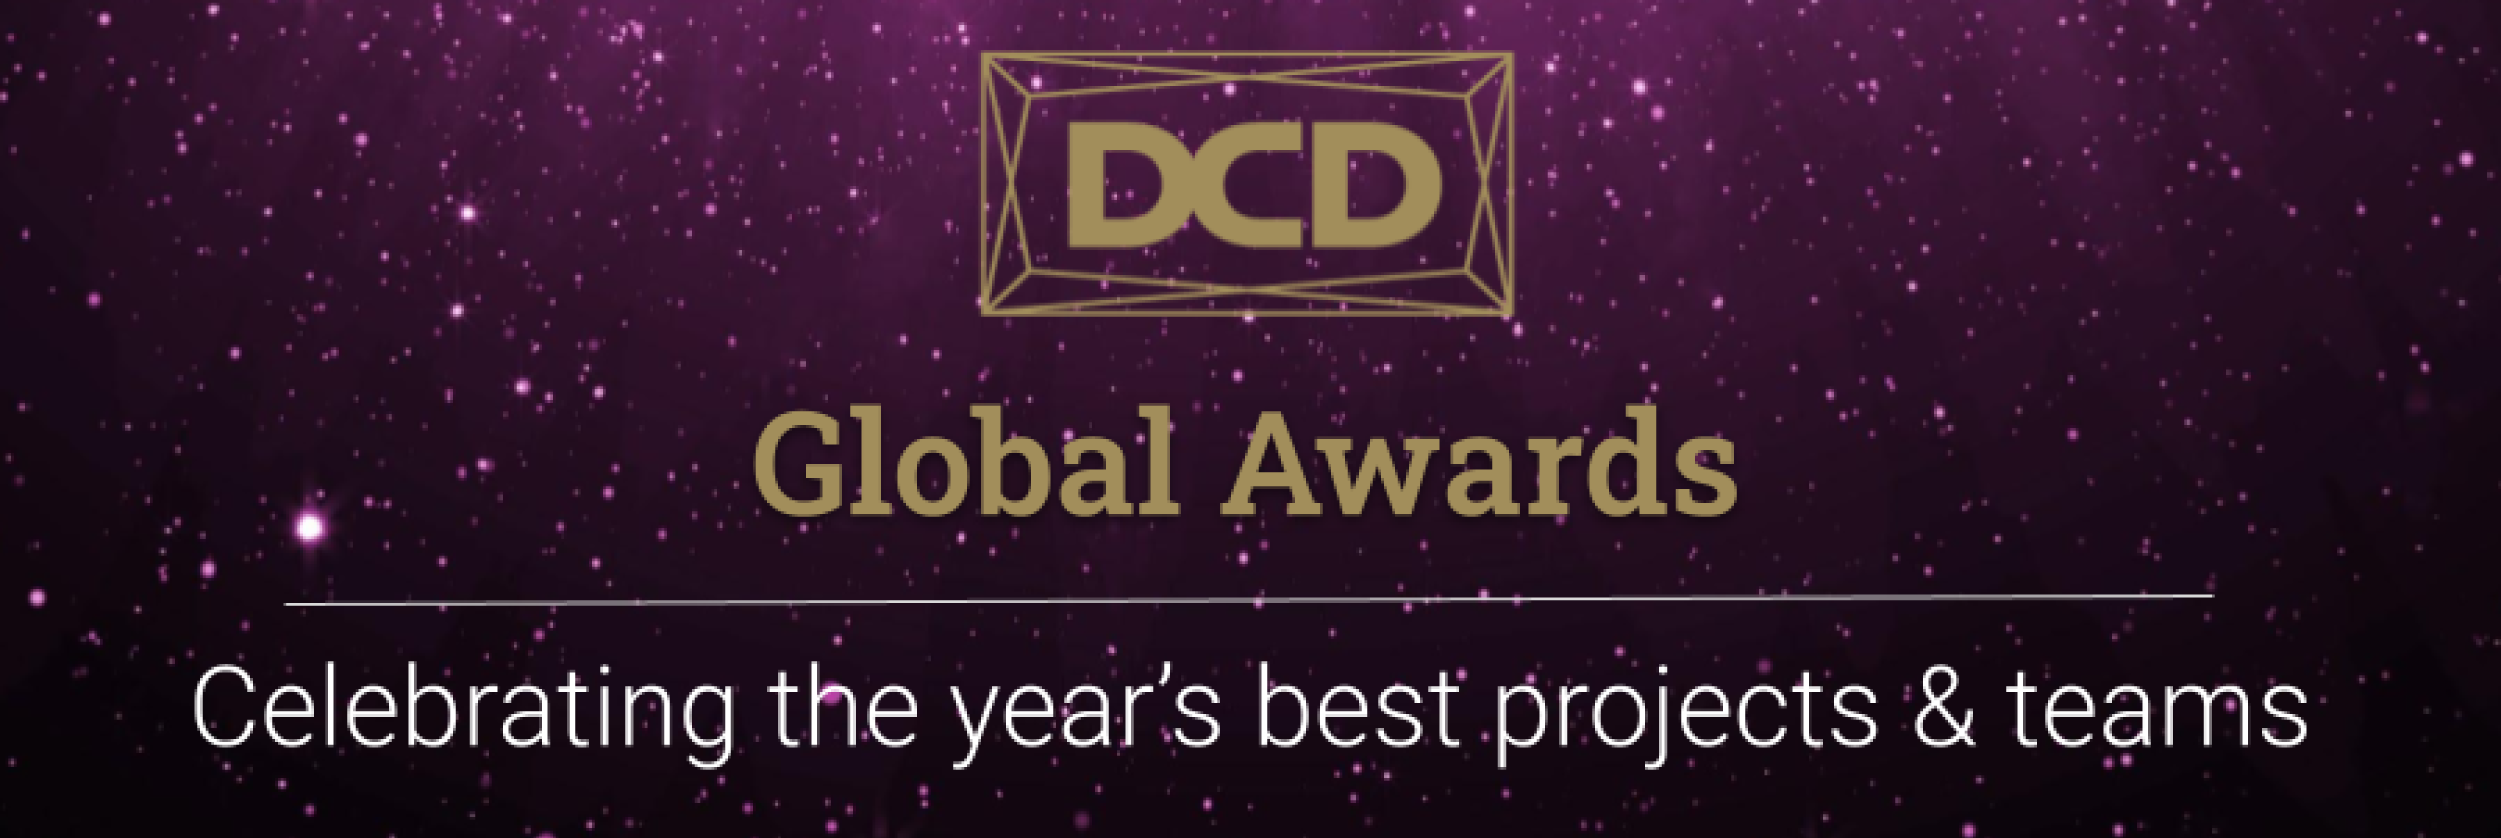 Gtd fue el único operador nominado de Latinoamérica y en Chile en los DCD Awards